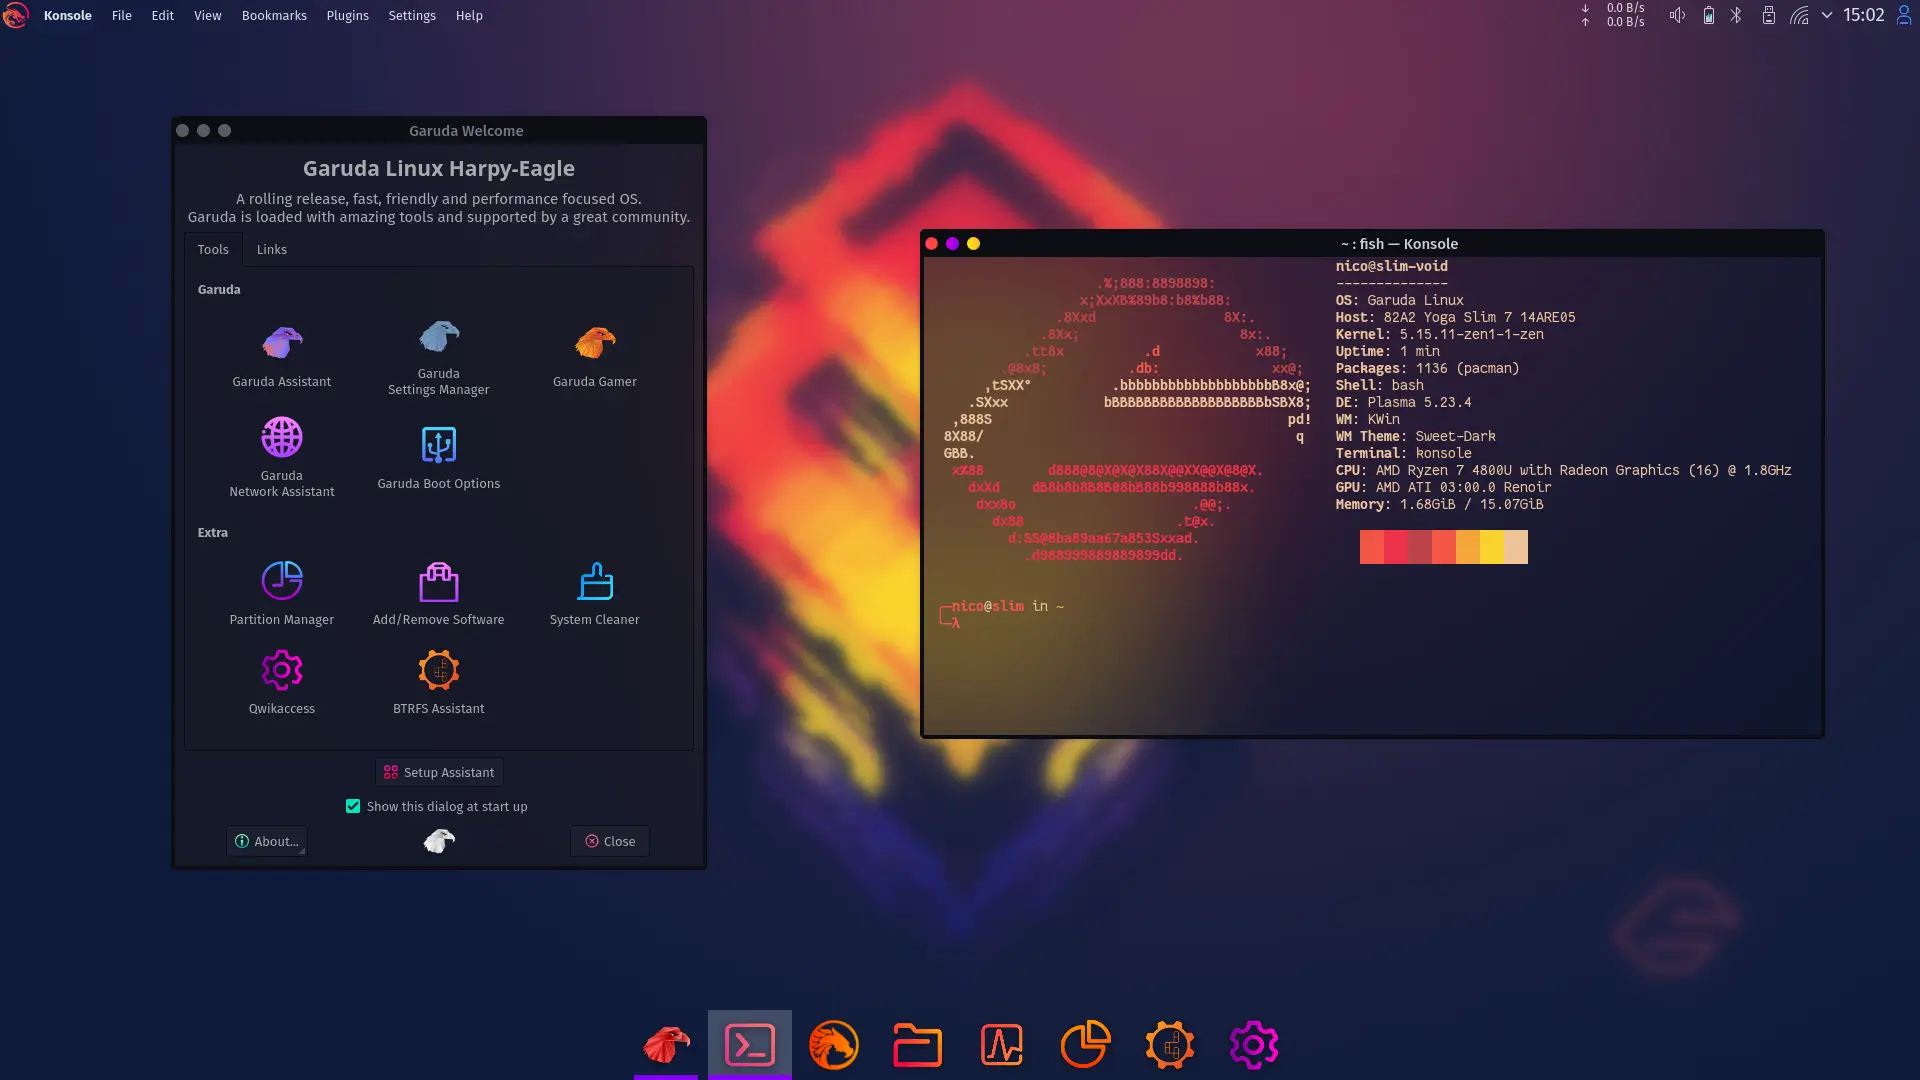 Garuda KDE Dr460nized Gaming Edition